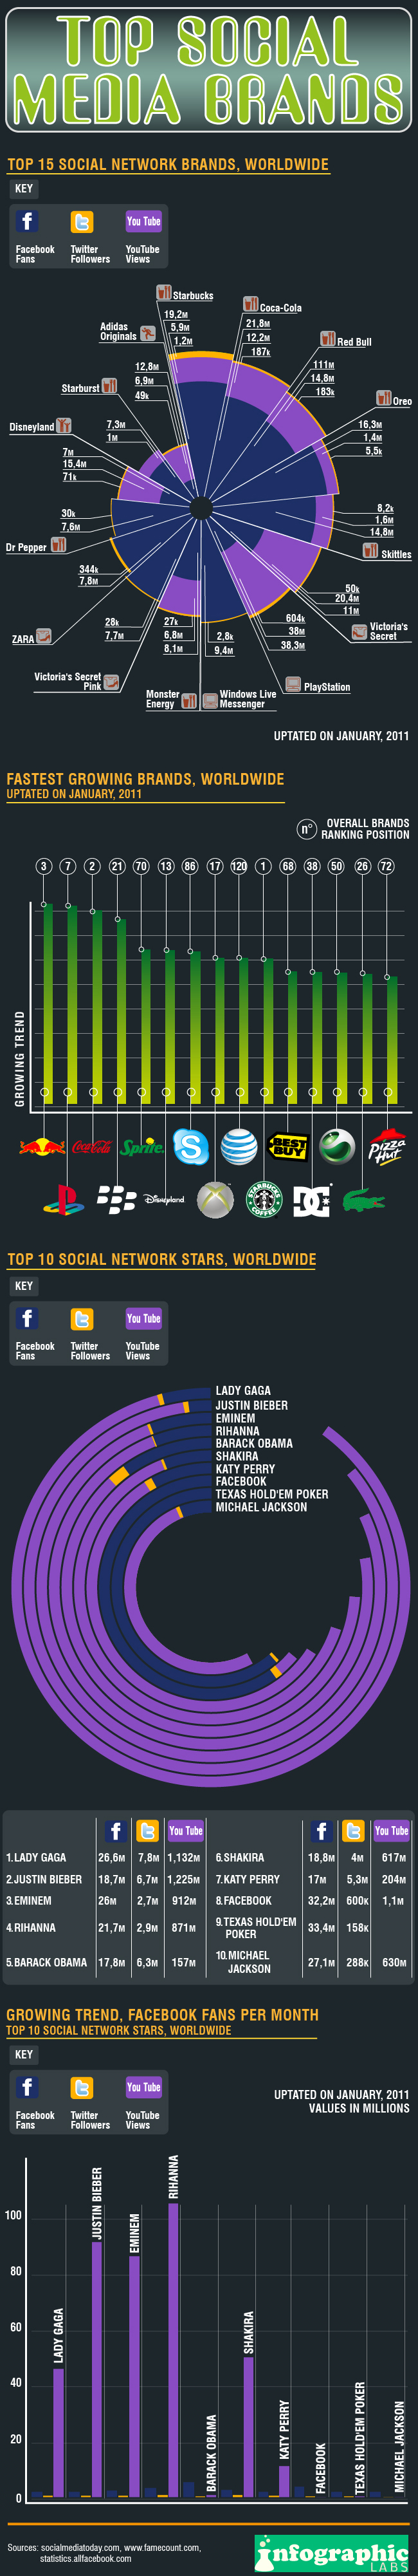 Social-Media-Brands-infografic